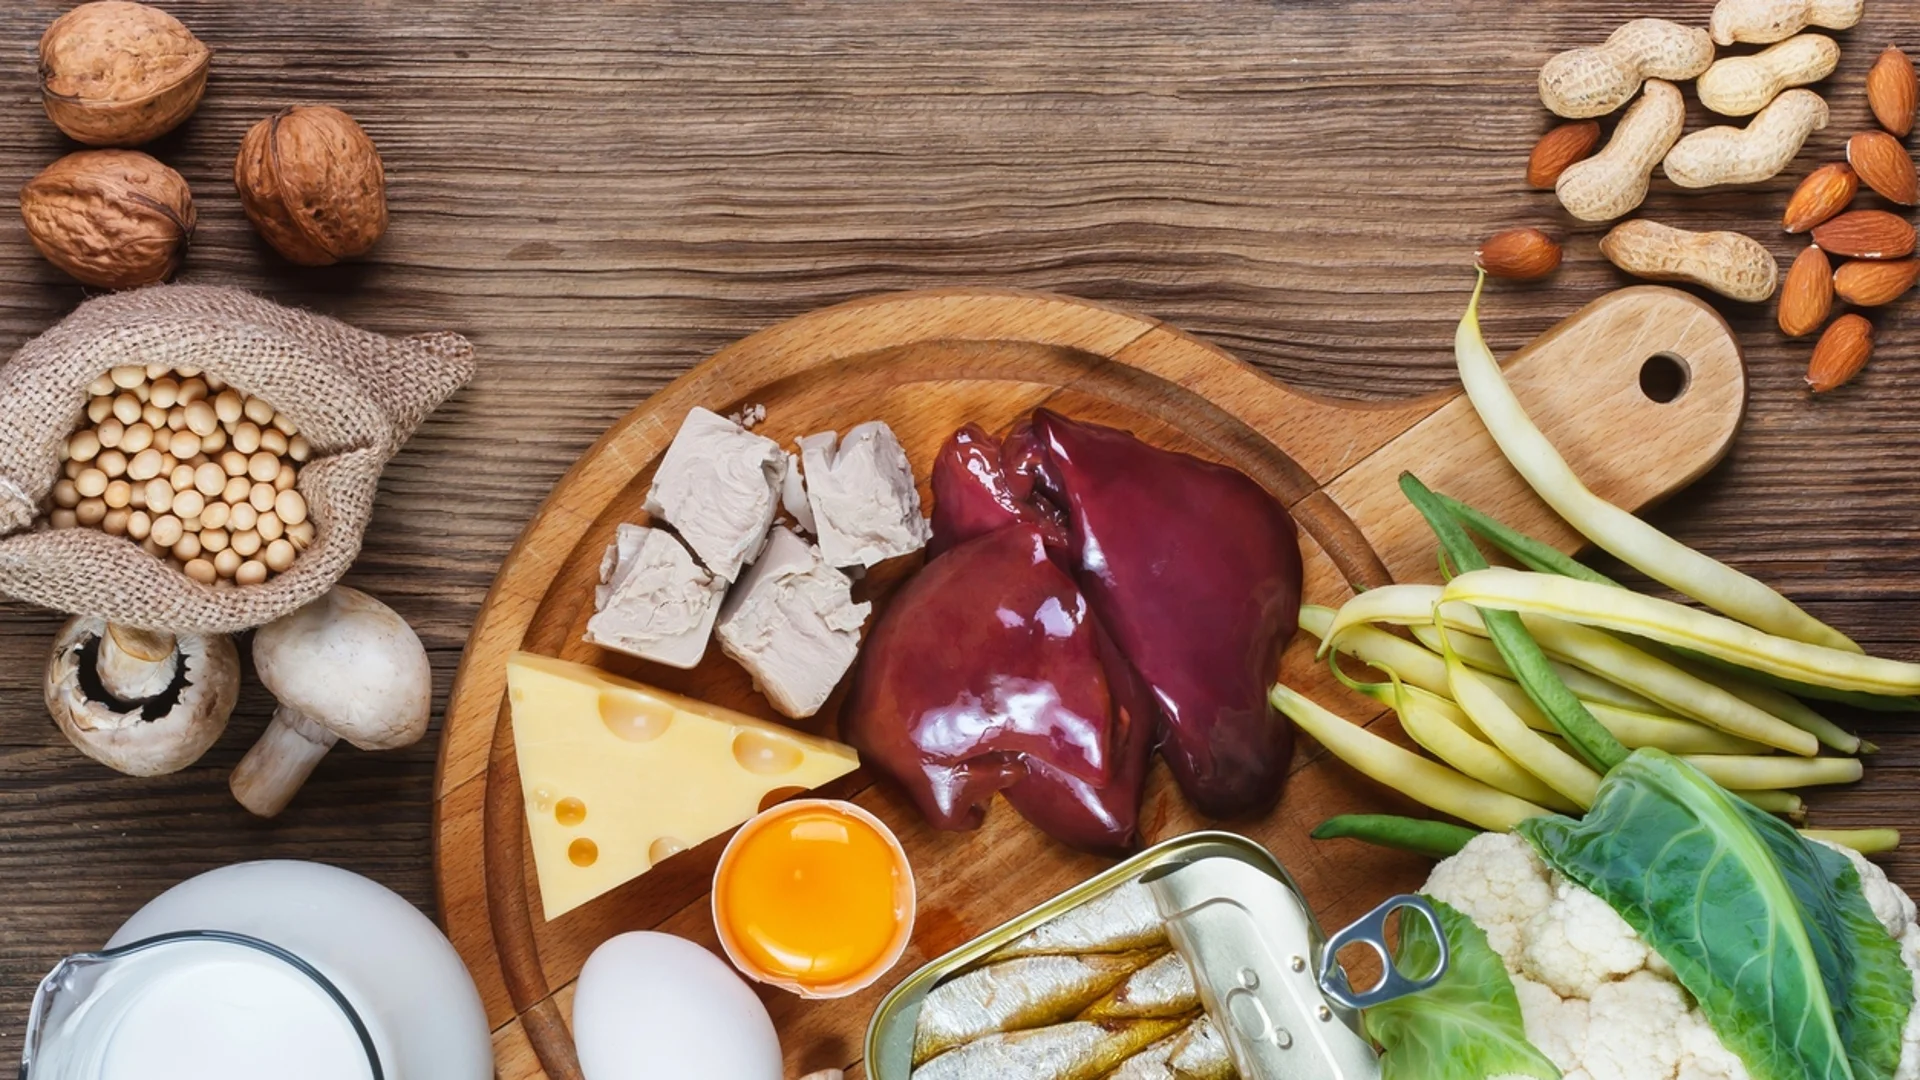 11-те най-богати на биотин храни, които да добавите към вашата диета, според експерти